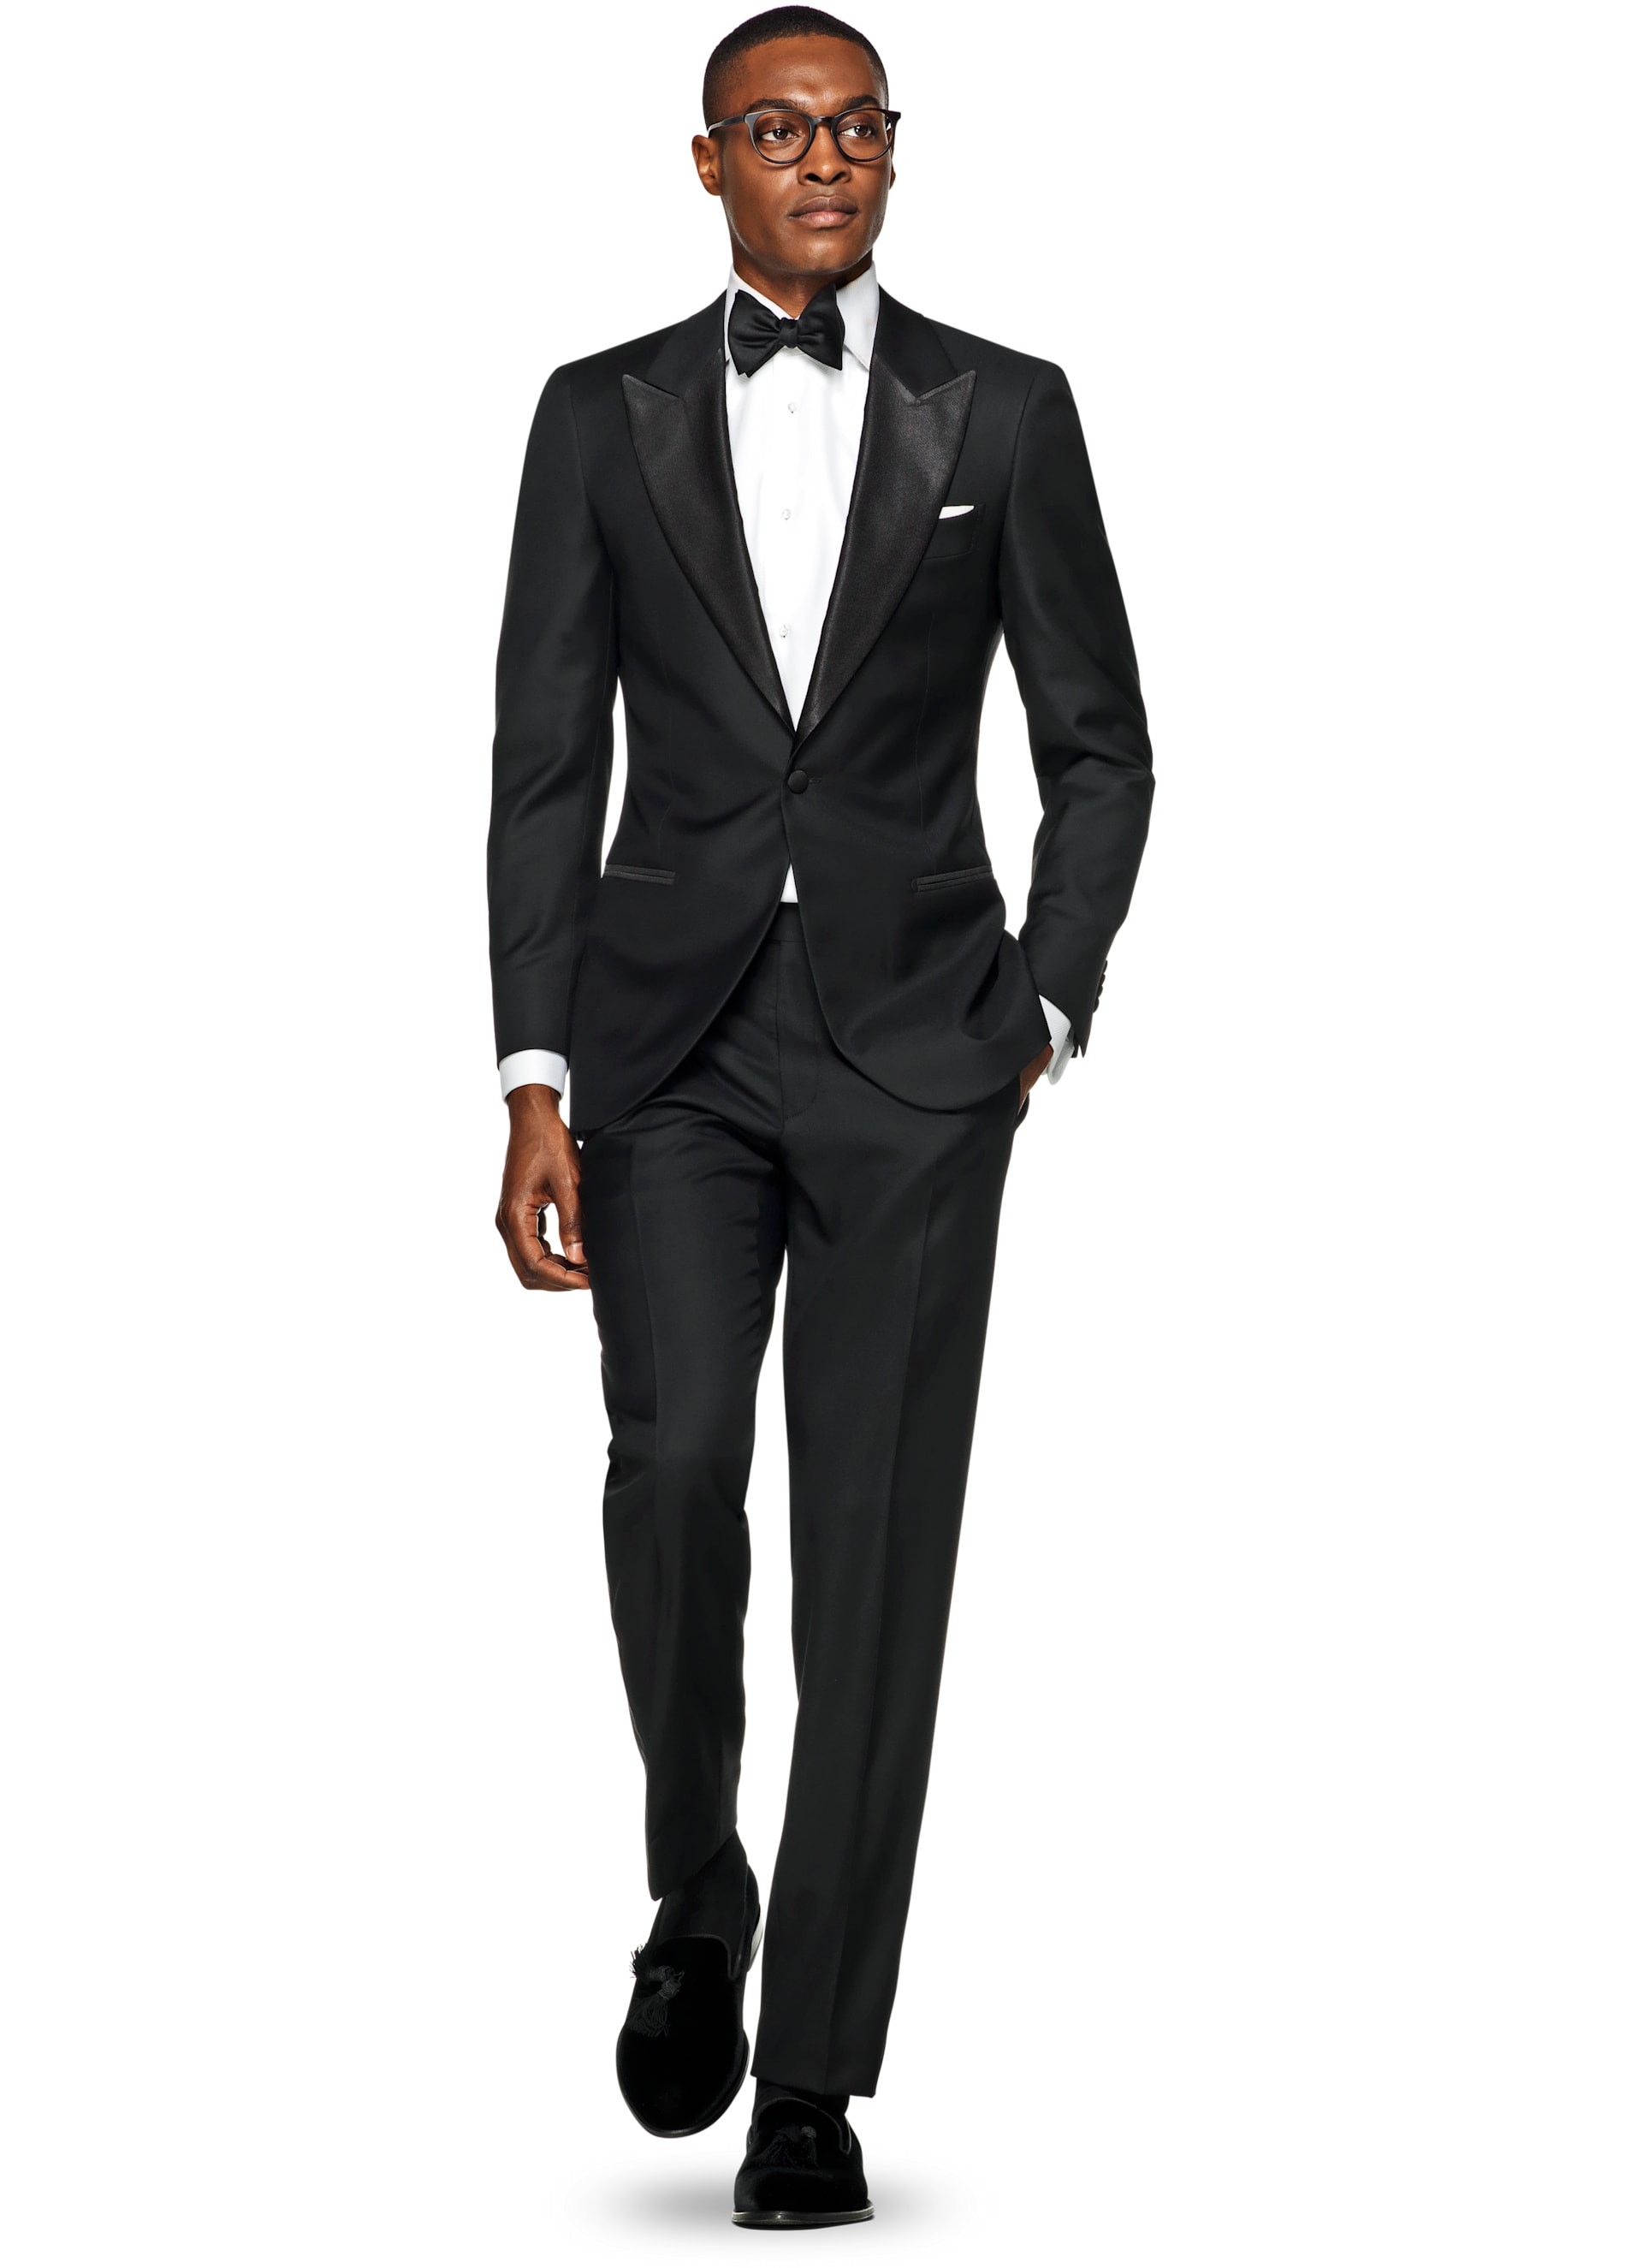 Suit Black Plain Tuxedo P1199i-s | Suitsupply Online Store